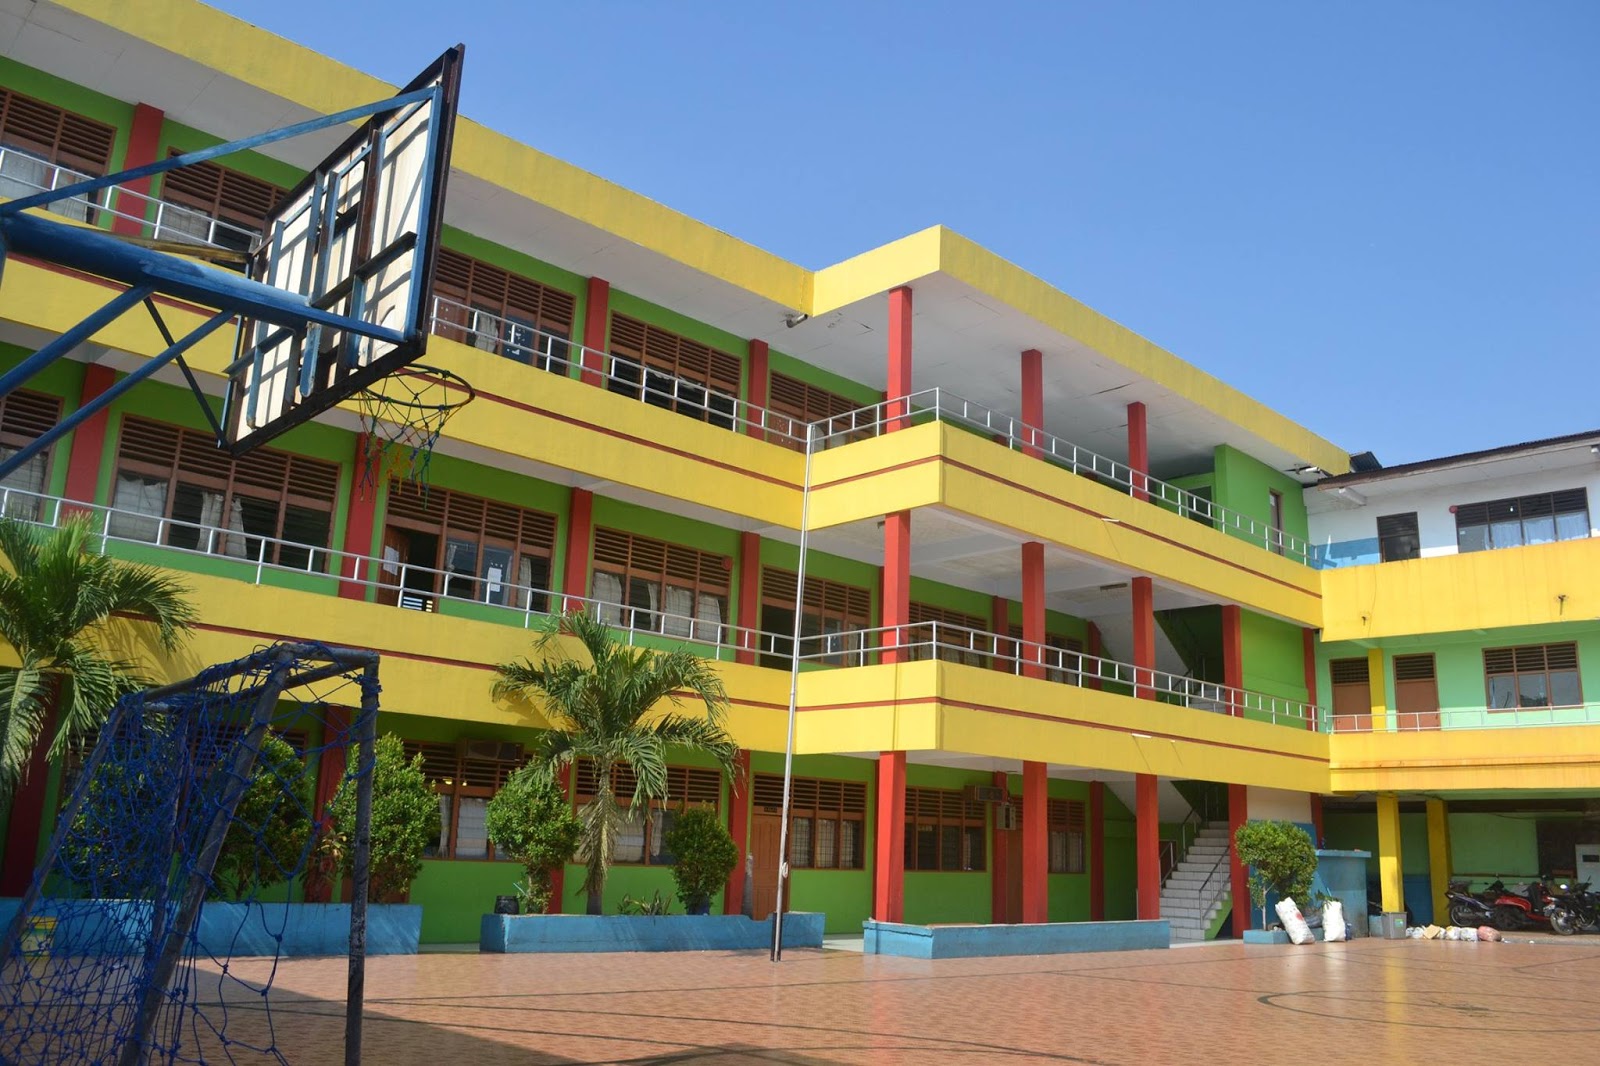  32 Gambar  Gedung Sekolah  Minimalis Modern Paling Baru 